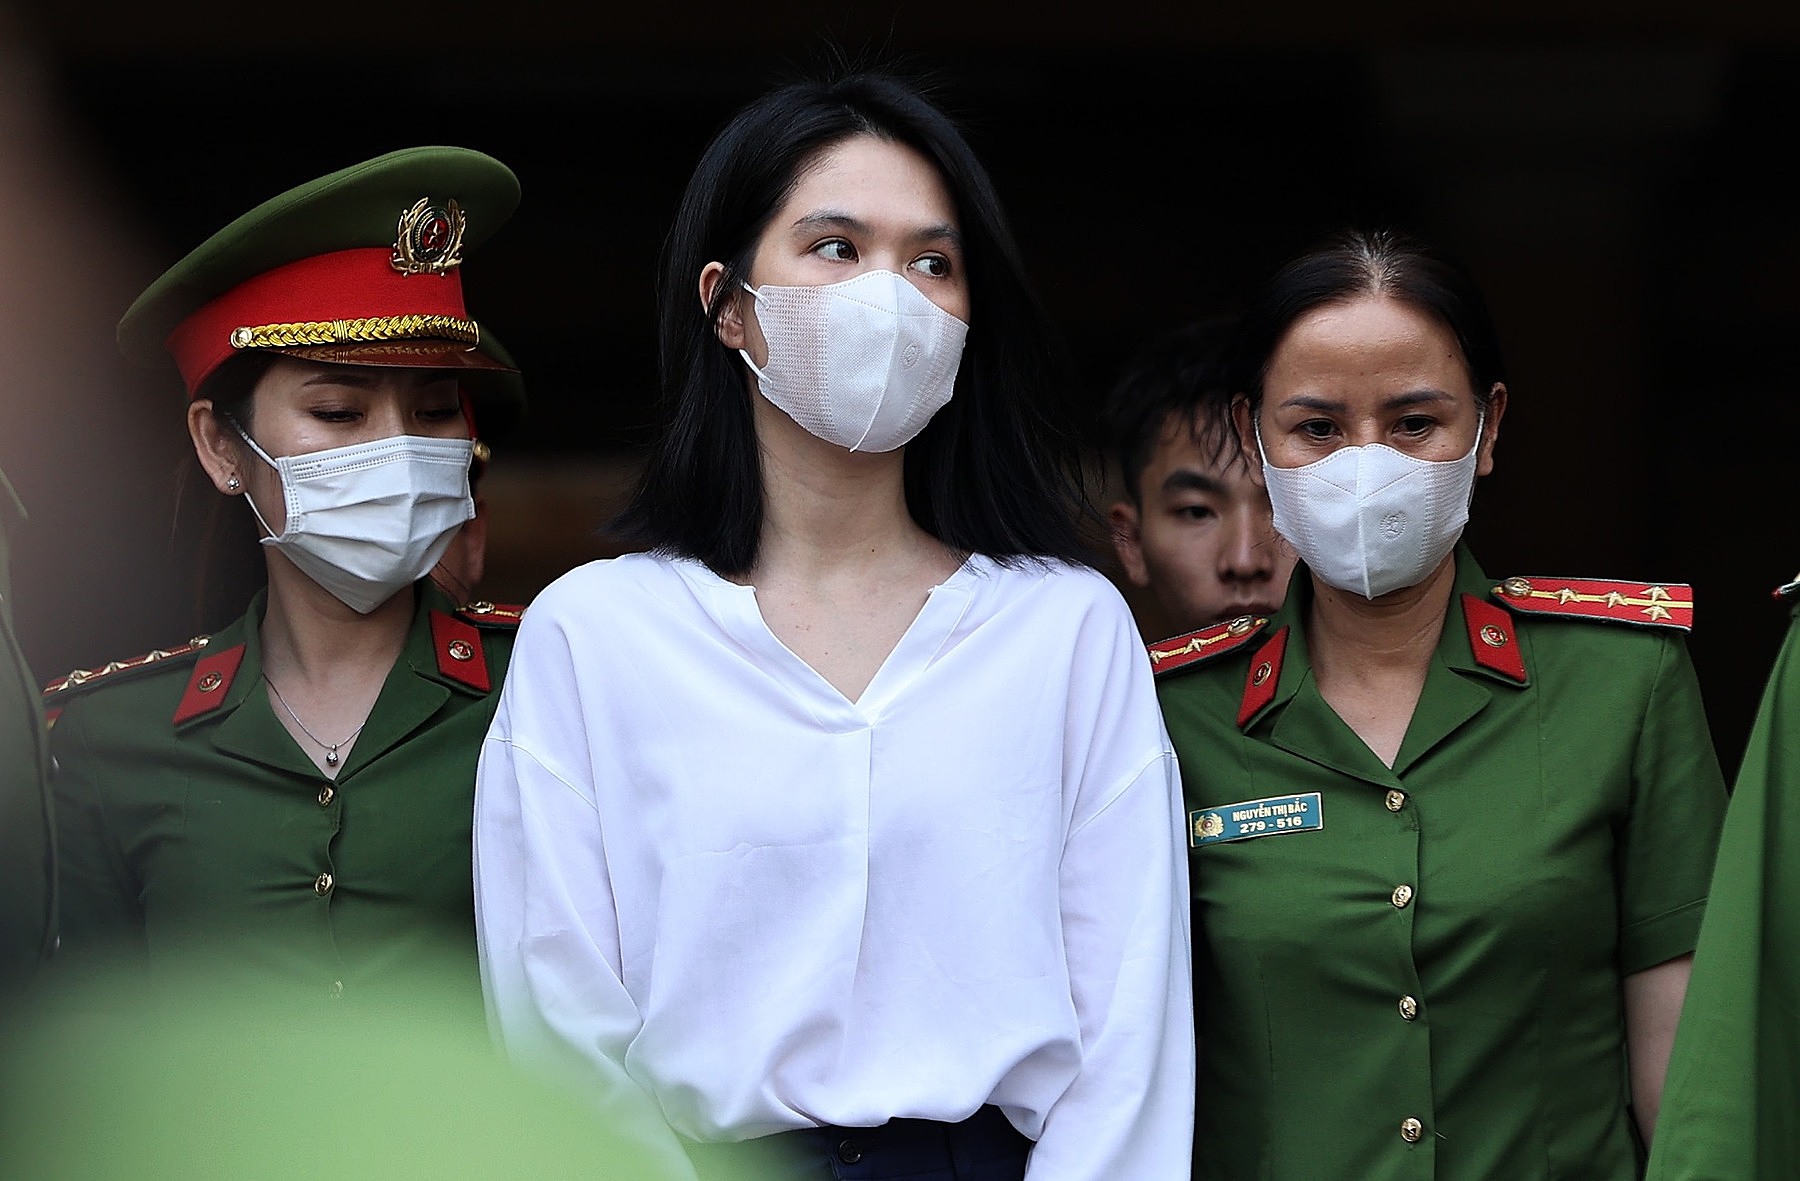 Nhiều sao Việt chúc mừng Ngọc Trinh nhận án tù treo, CMĐ tranh cãi 'sao vướng vòng lao lý lại chúc mừng?' - ảnh 4